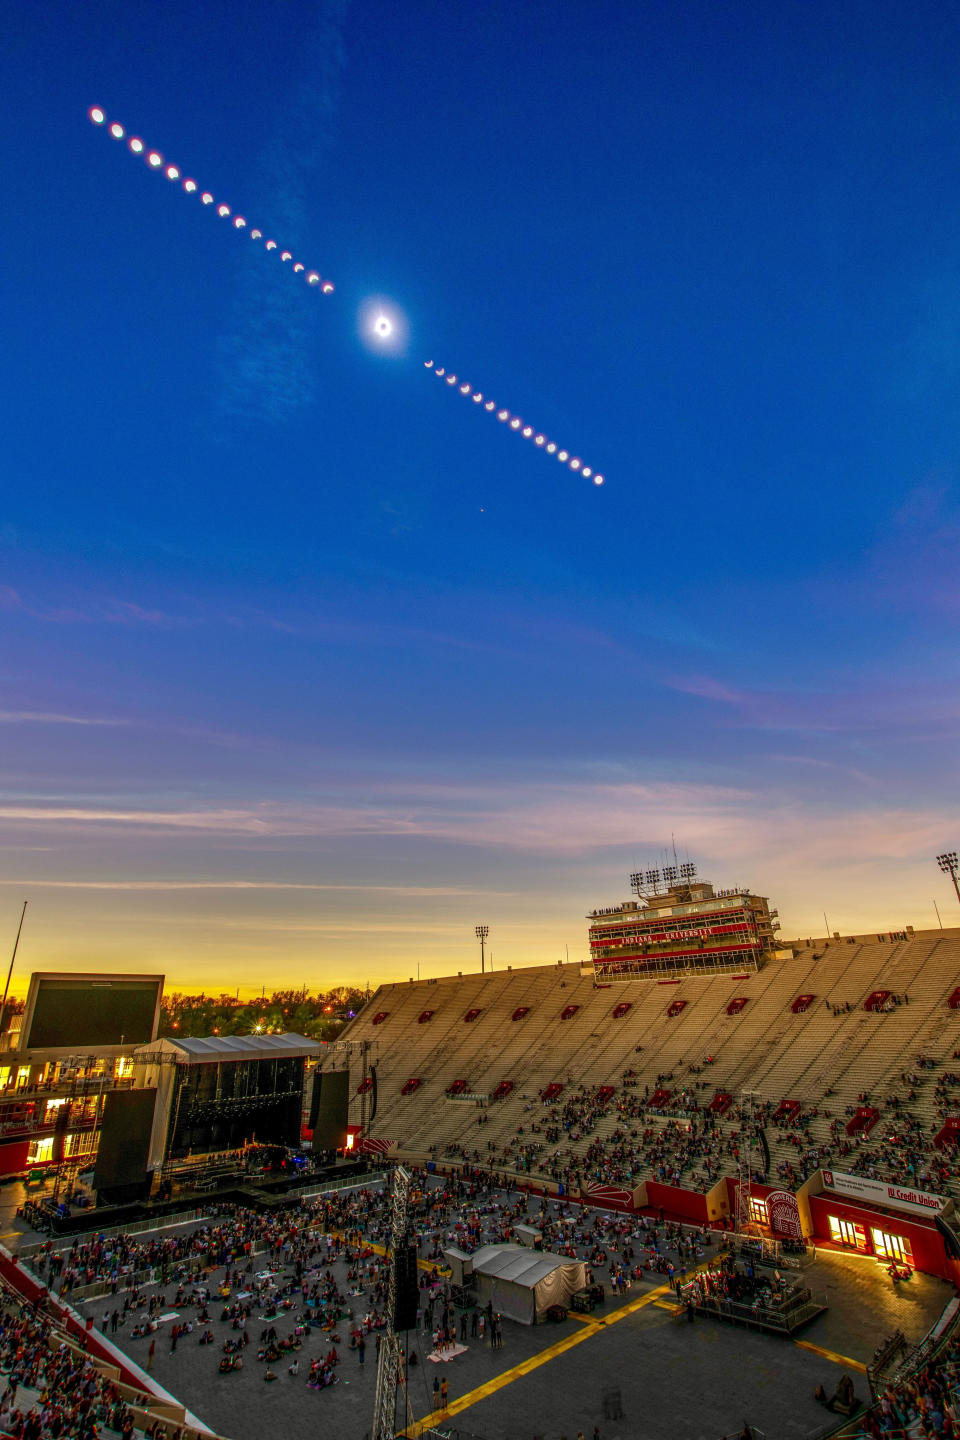 Ein zusammengesetztes Zeitrafferbild einer Sonnenfinsternis zeigt den Verlauf einer Sonnenfinsternis und umrahmt die Gesamtheit in der Mitte eines sich verdunkelnden Himmels über einem spärlich besuchten Fußballstadion der Indiana University.